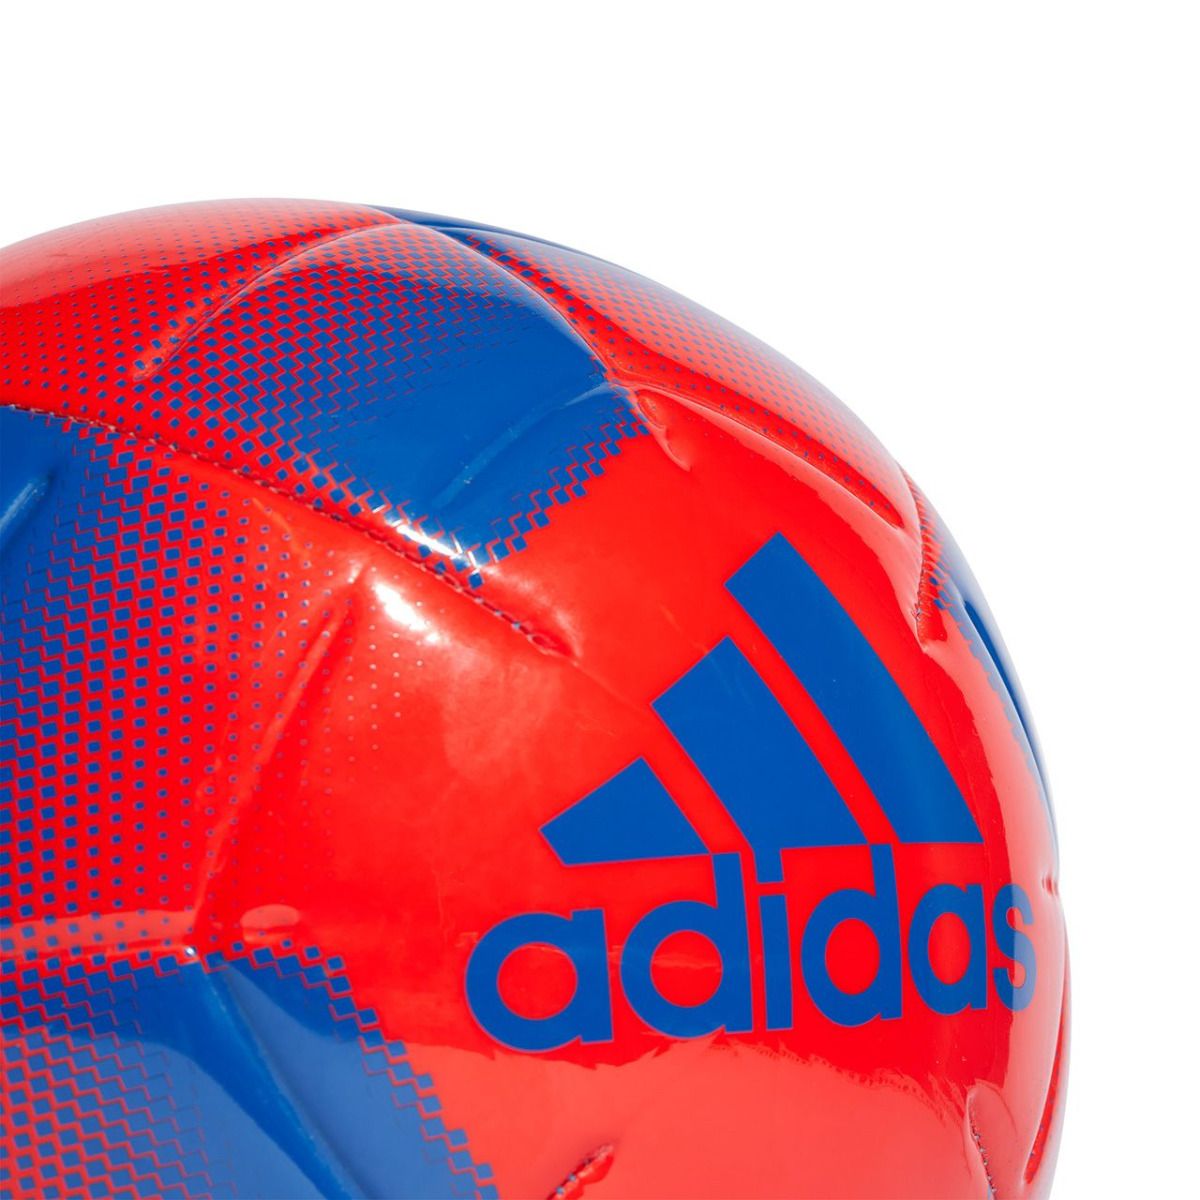 adidas Fotbalový míč EPP Club IA0966